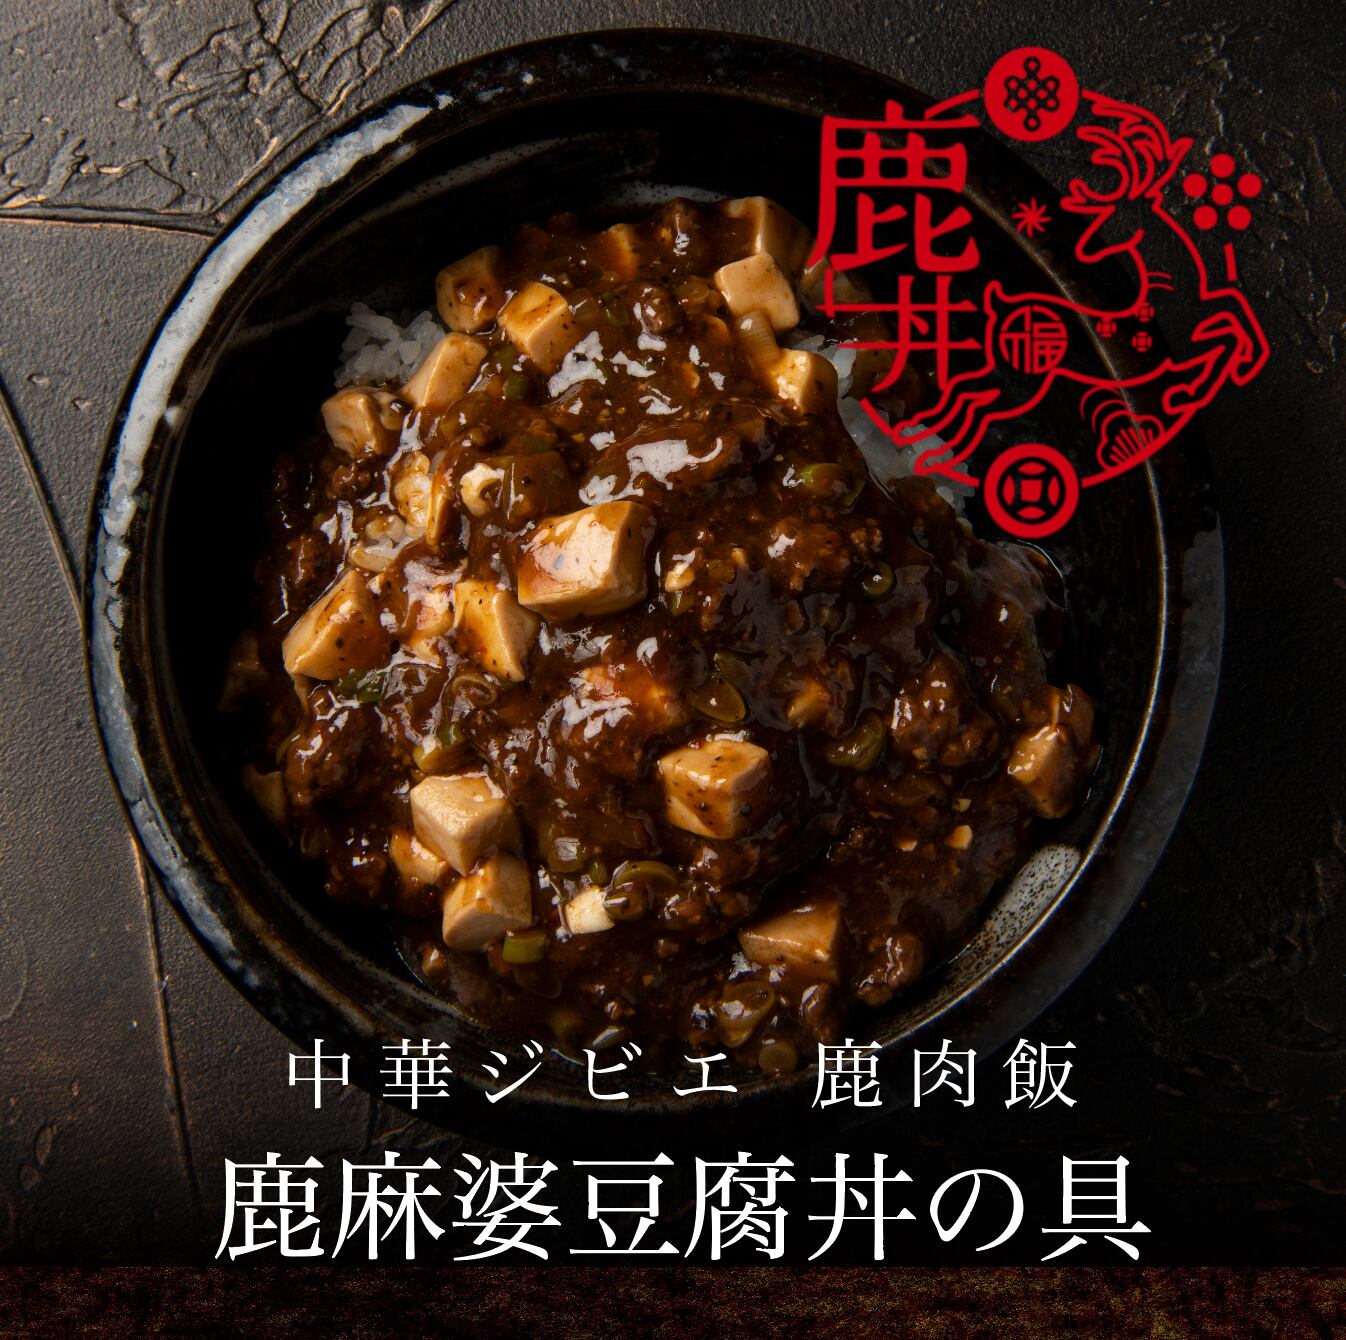 【鹿肉飯】鹿麻婆豆腐丼の具 × 3食セット